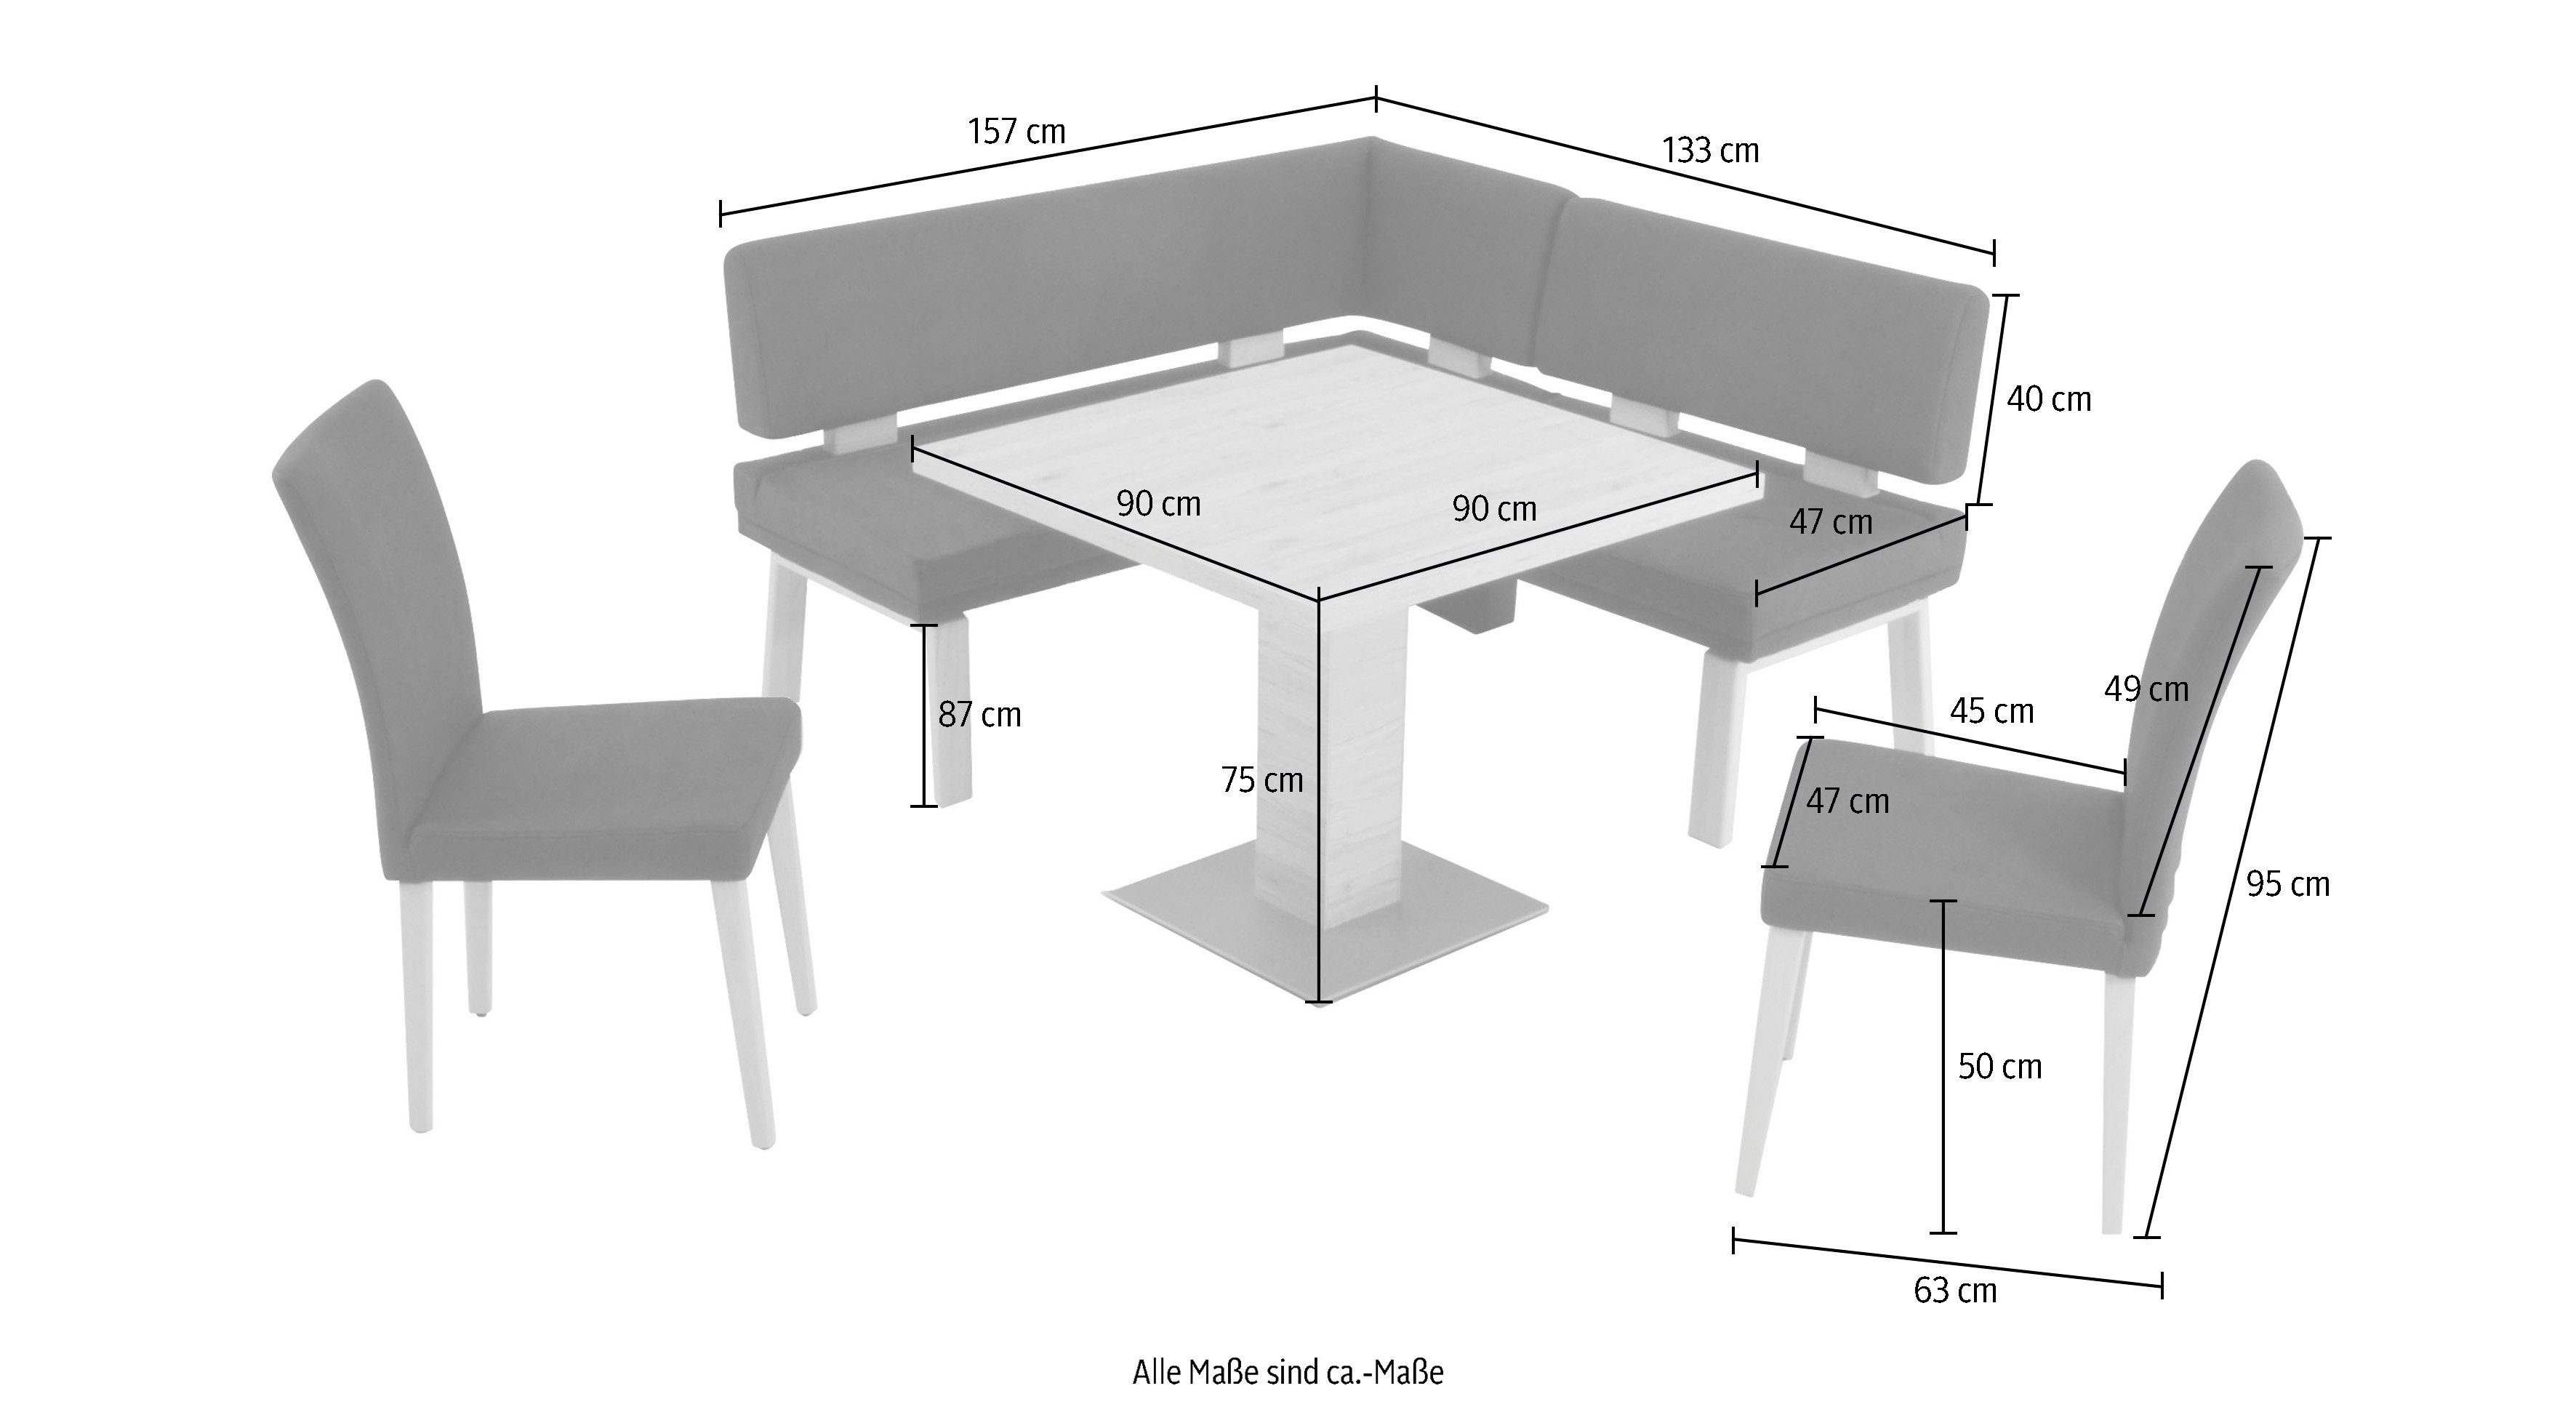 K+W Komfort & Wohnen Eckbankgruppe und sand 4-Fußholzstühle Santos Tisch 157cm, 90x90cm, Eiche zwei gleichschenklig I